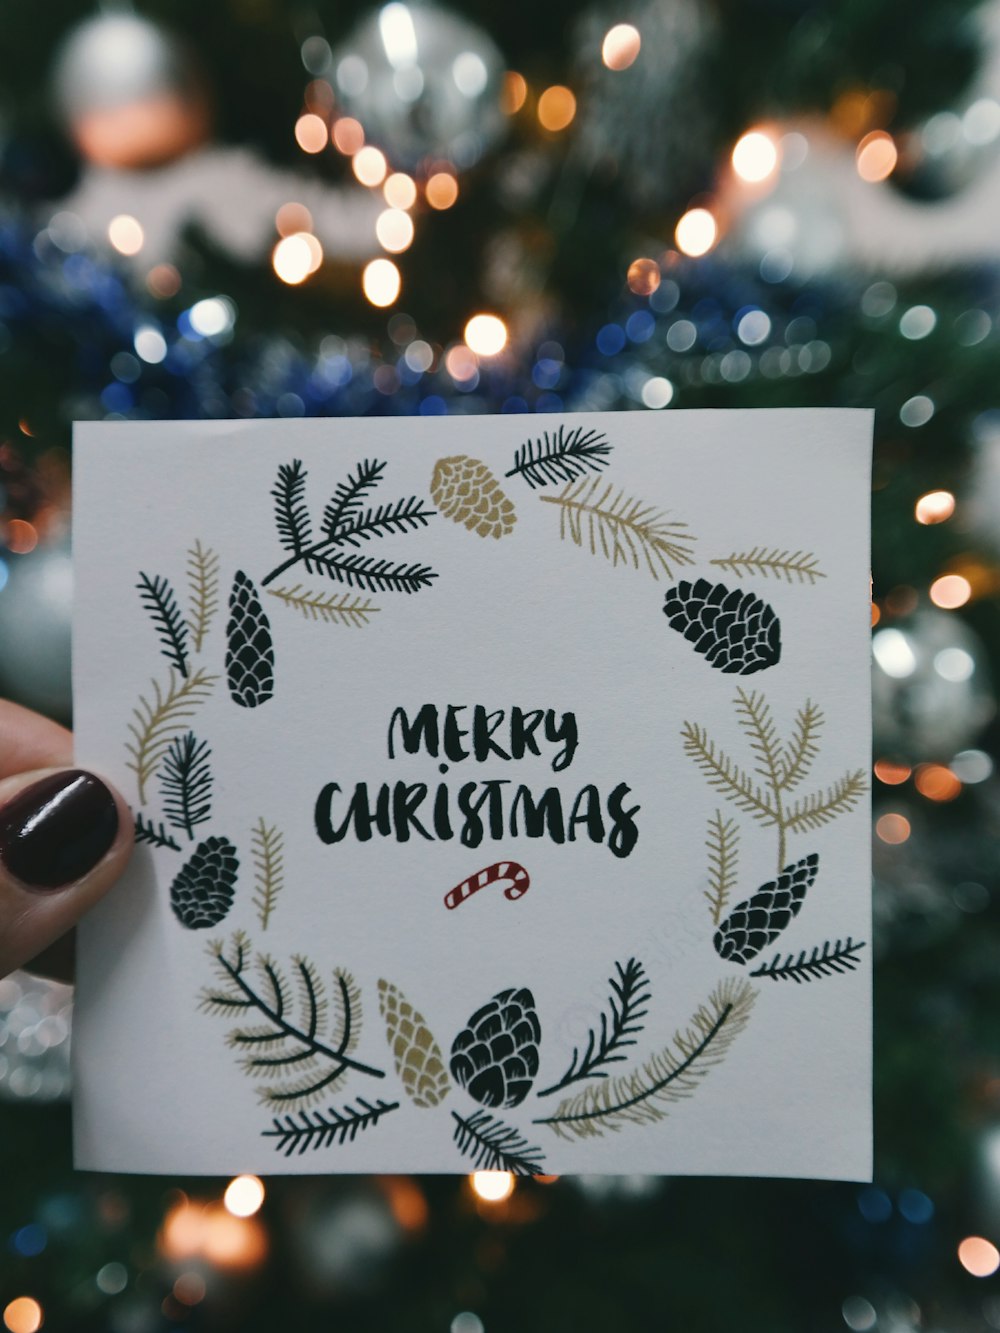 Un morceau de papier qui dit « Joyeux Noël » avec une couronne autour, tenu devant un arbre de Noël.